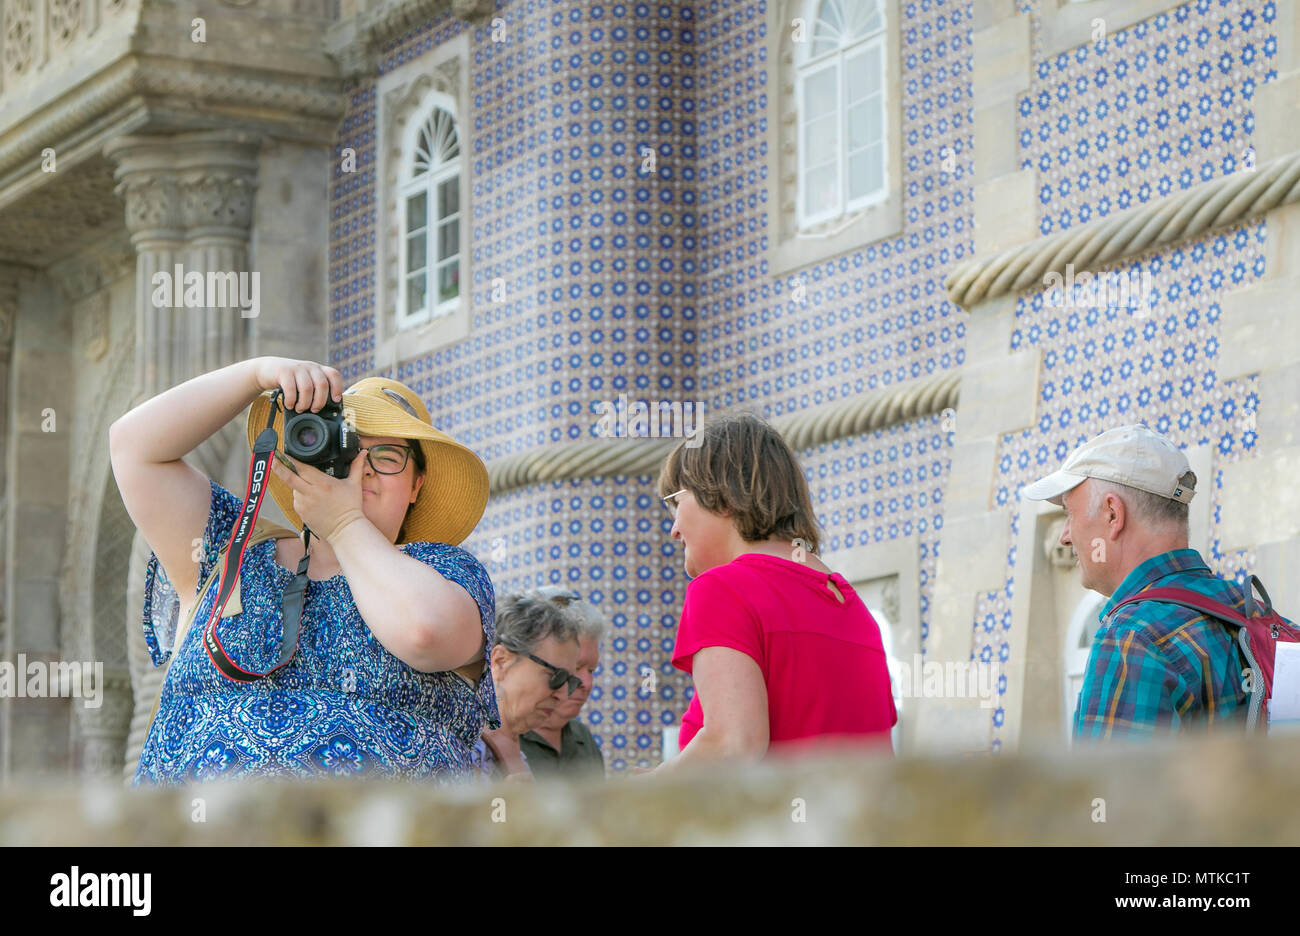 Fette Frau verwendet Ihre DSLR und geniessen Sie die Bilder von Pena Palast in Sintra, Portugal. Stockfoto